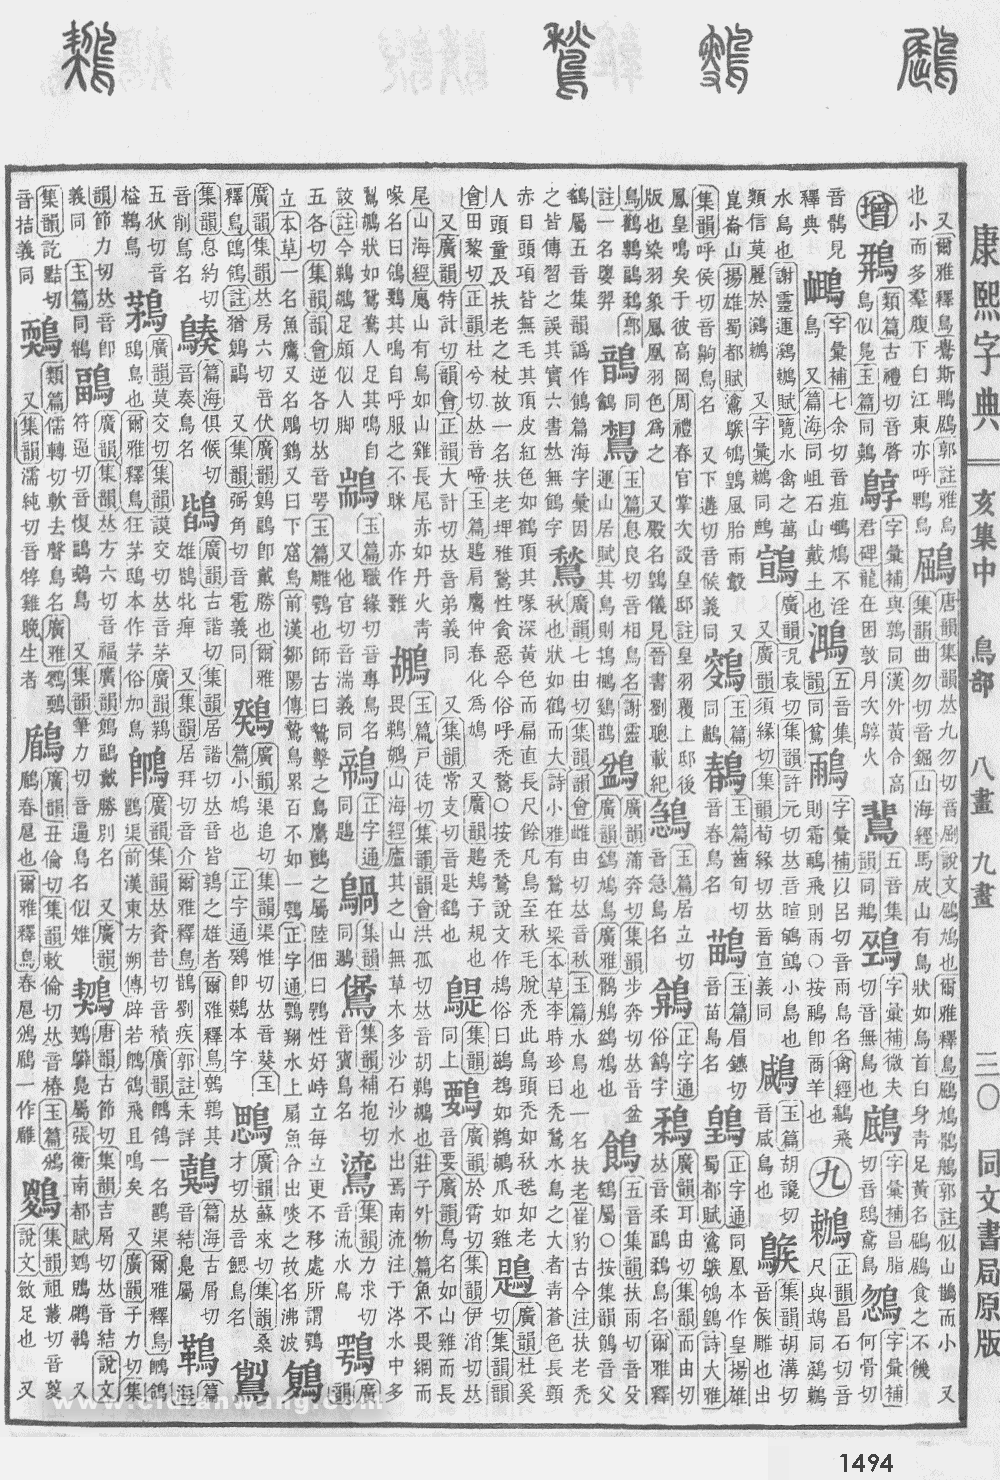 康熙字典掃描版第1494頁